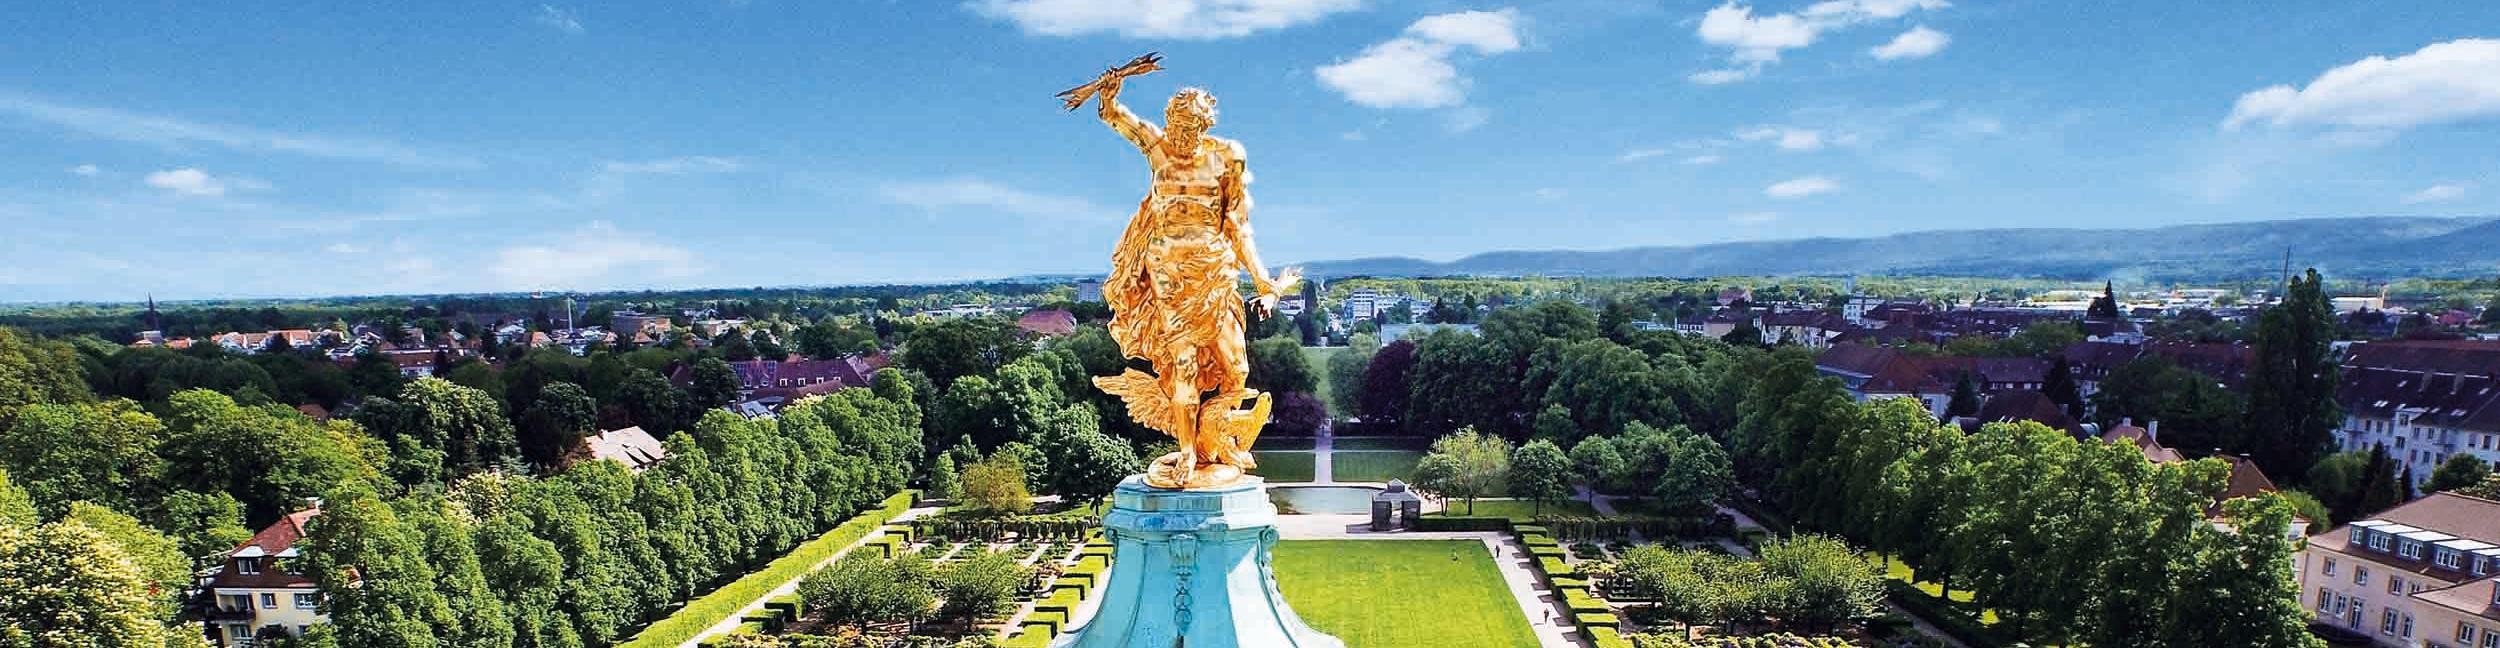 Goldener Mann Schloss Rastatt.